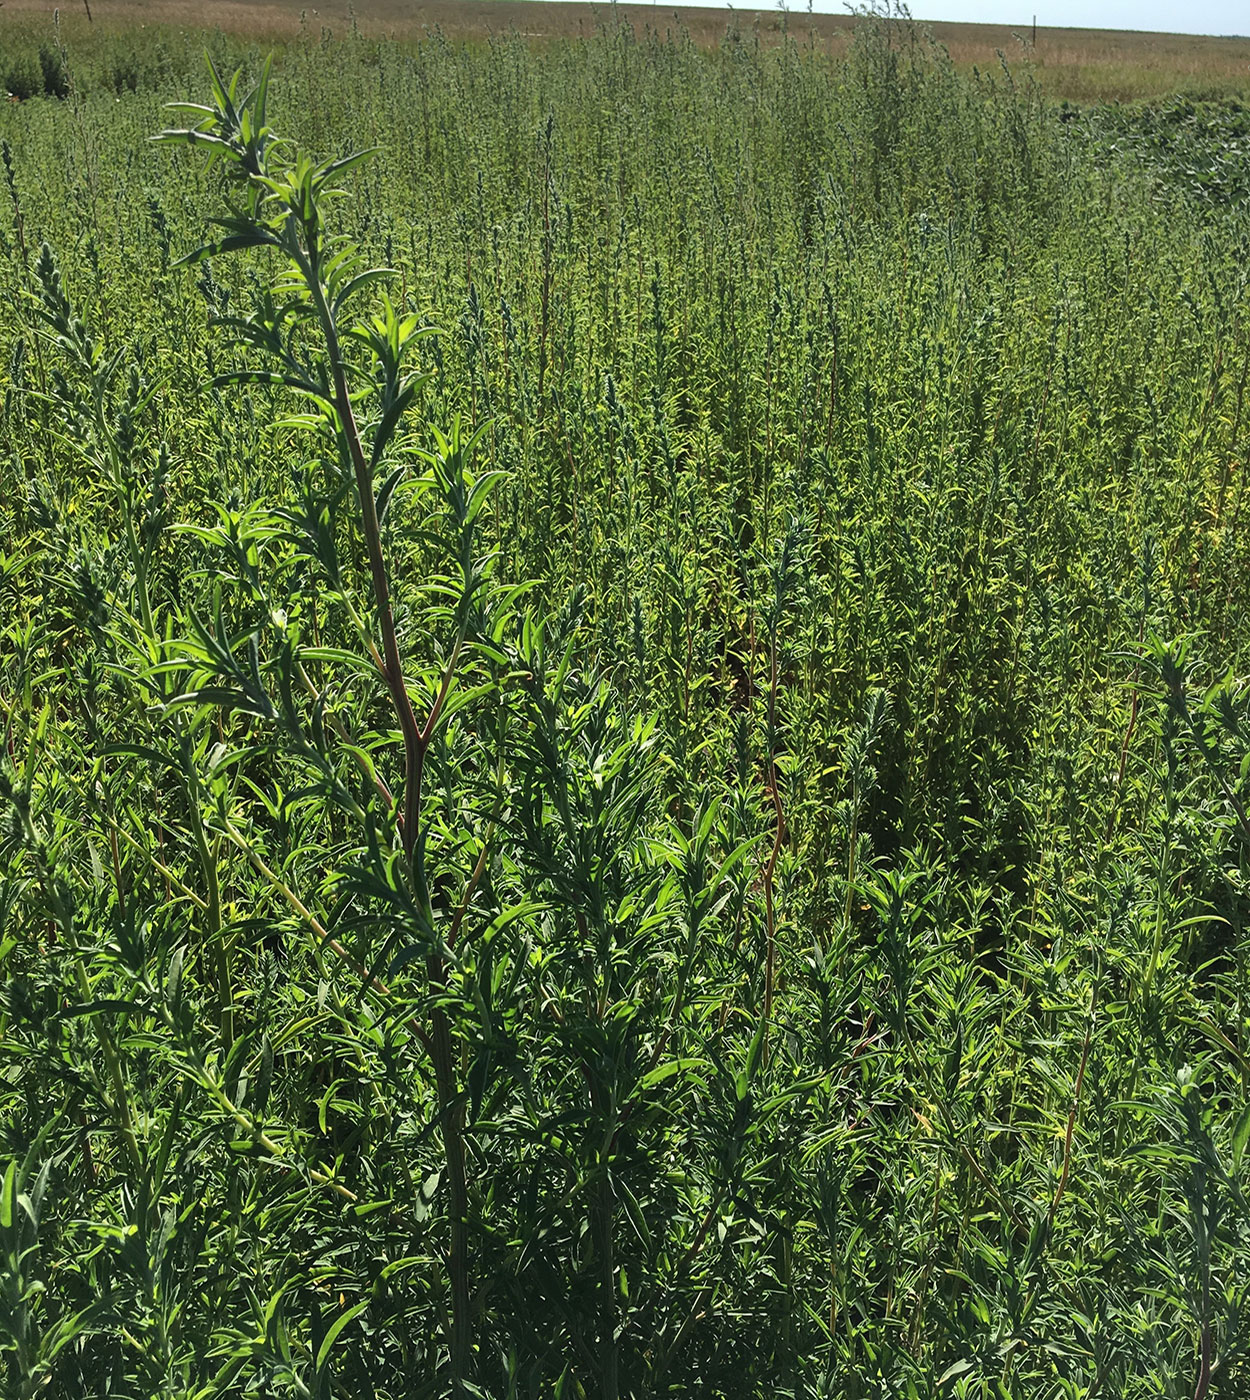 Kochia plants growing in a test plot field.